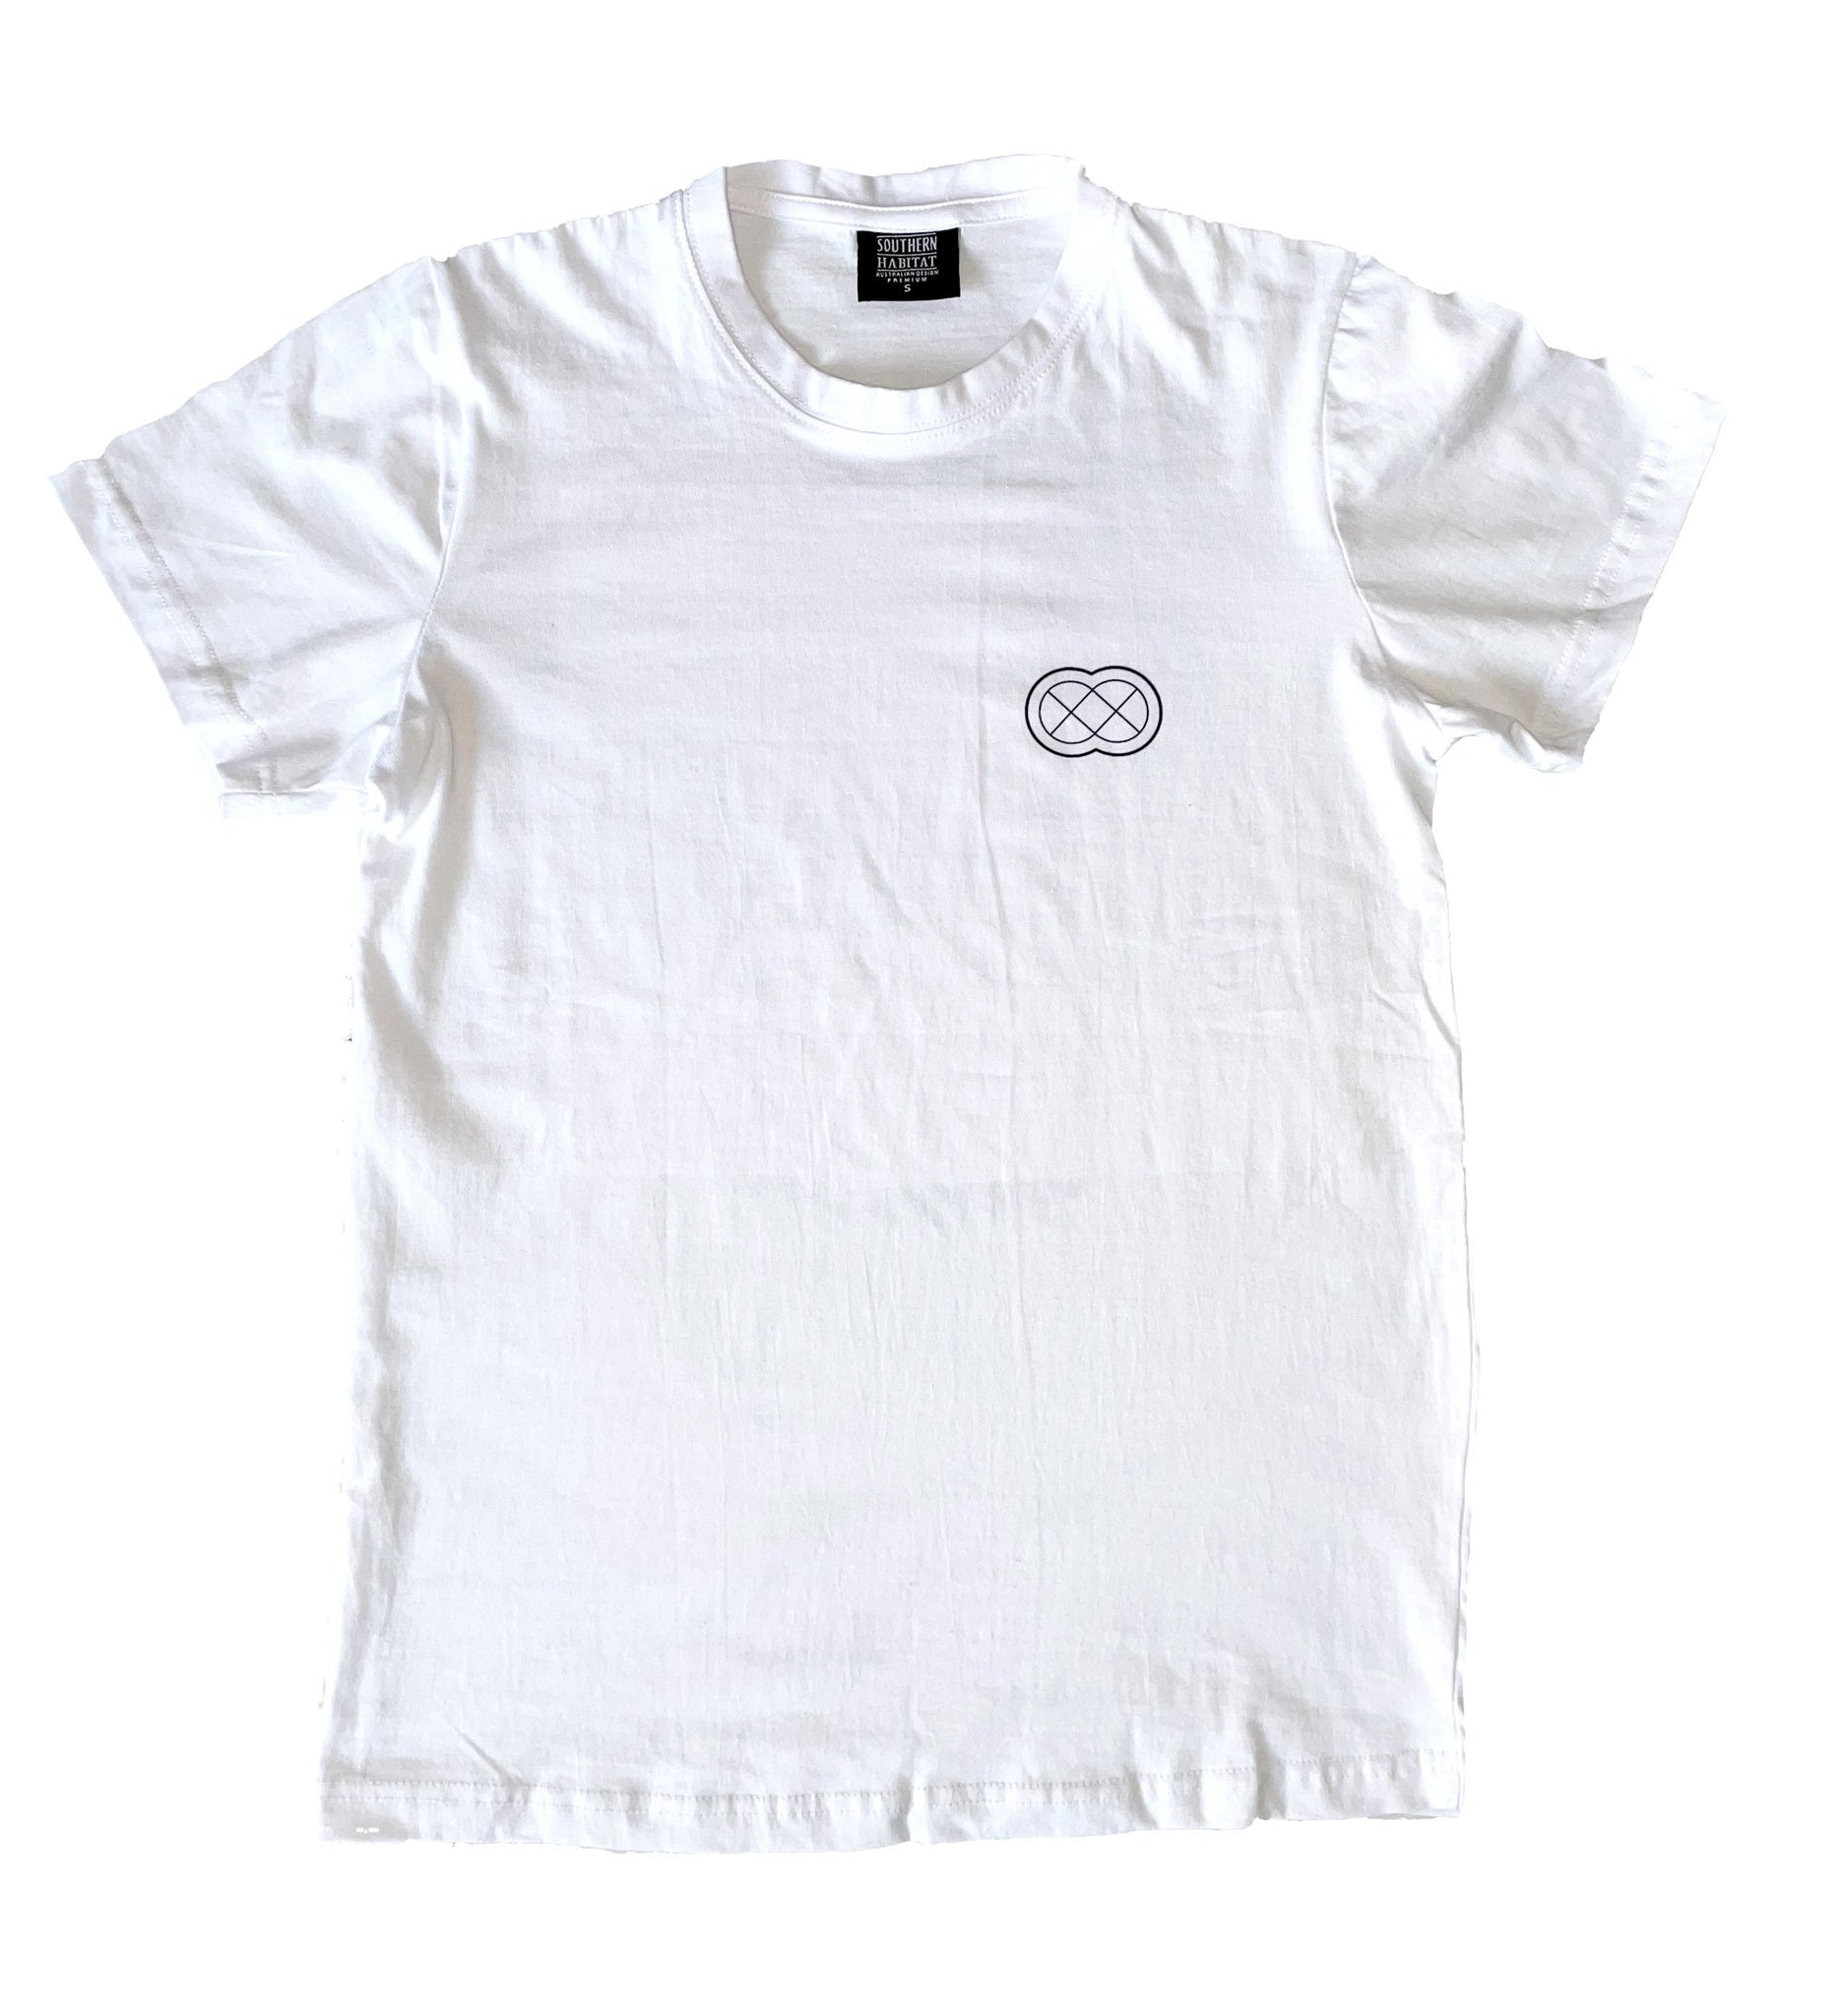 Spoke Motorcycle Festival White T-shirt - Spoke Circle Logo